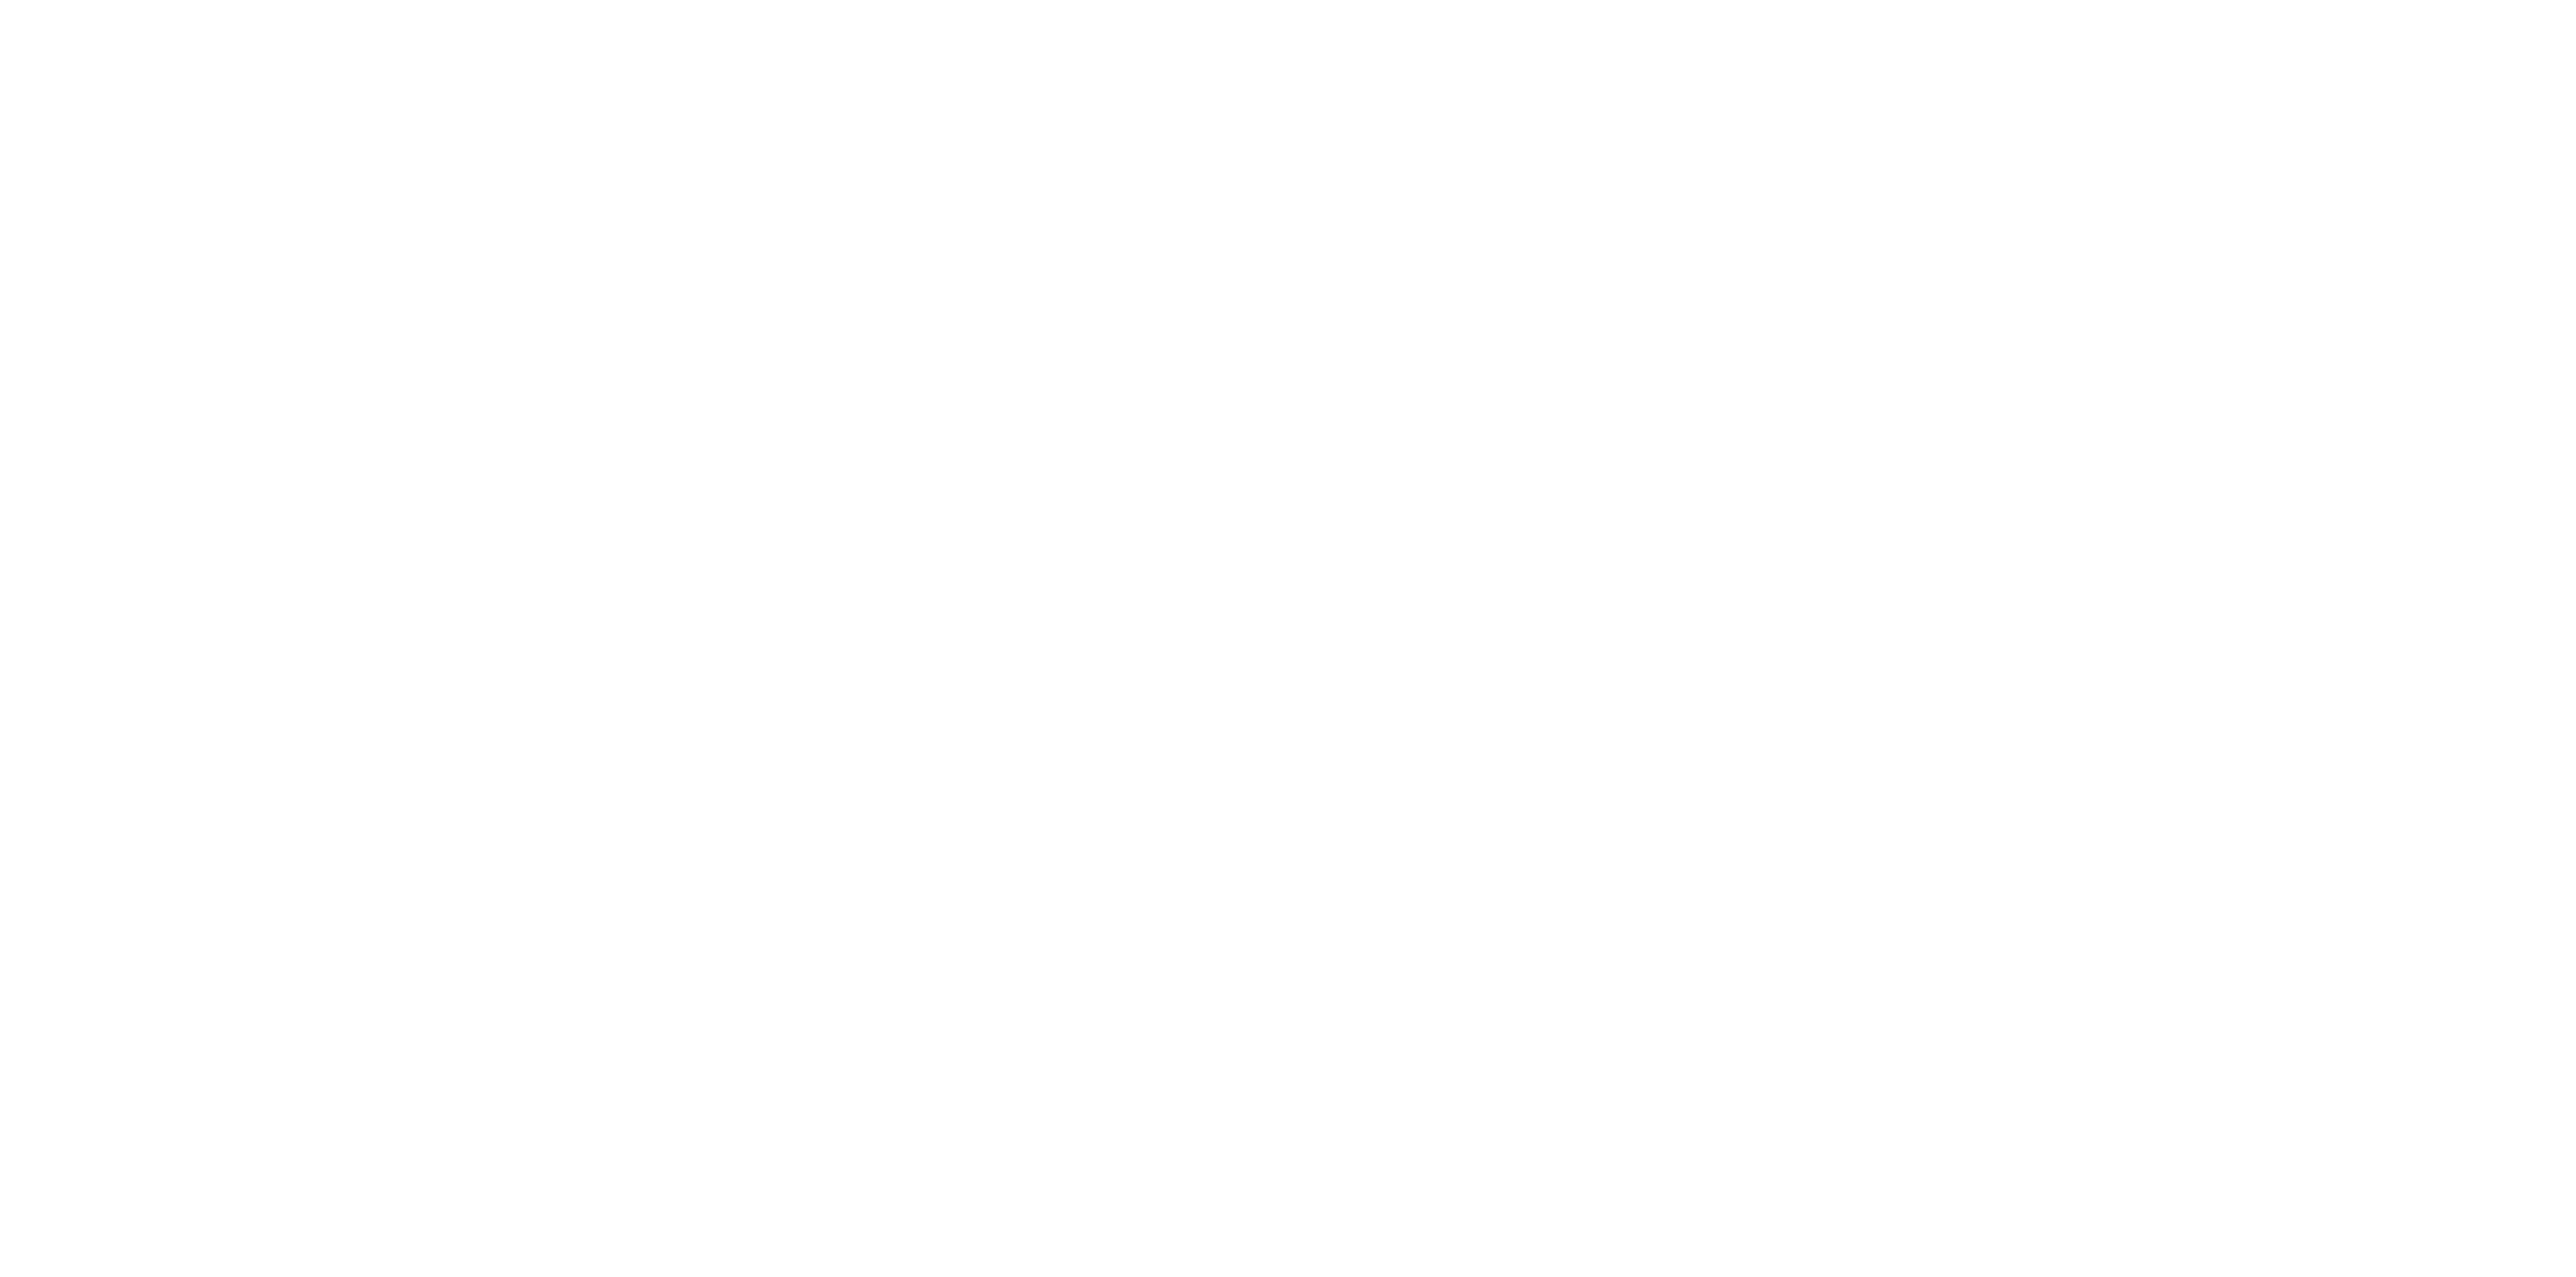 CHURCH UPSIDE DOWN